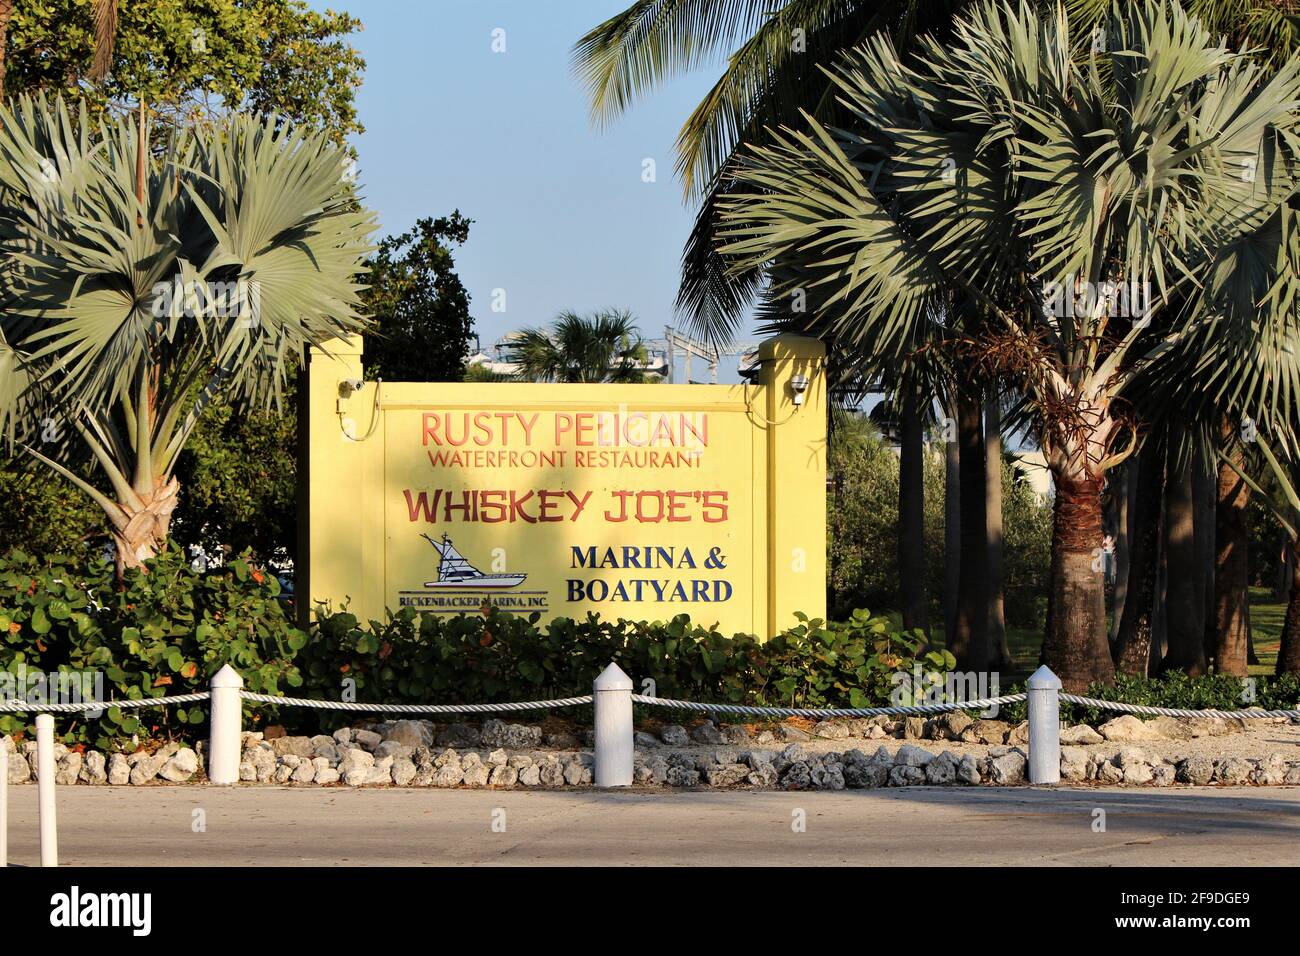 Un panneau près du restaurant Rusty Pelican, de la marina de Rickenbacker et du chantier naval et du bar Whiskey Joe's. Banque D'Images